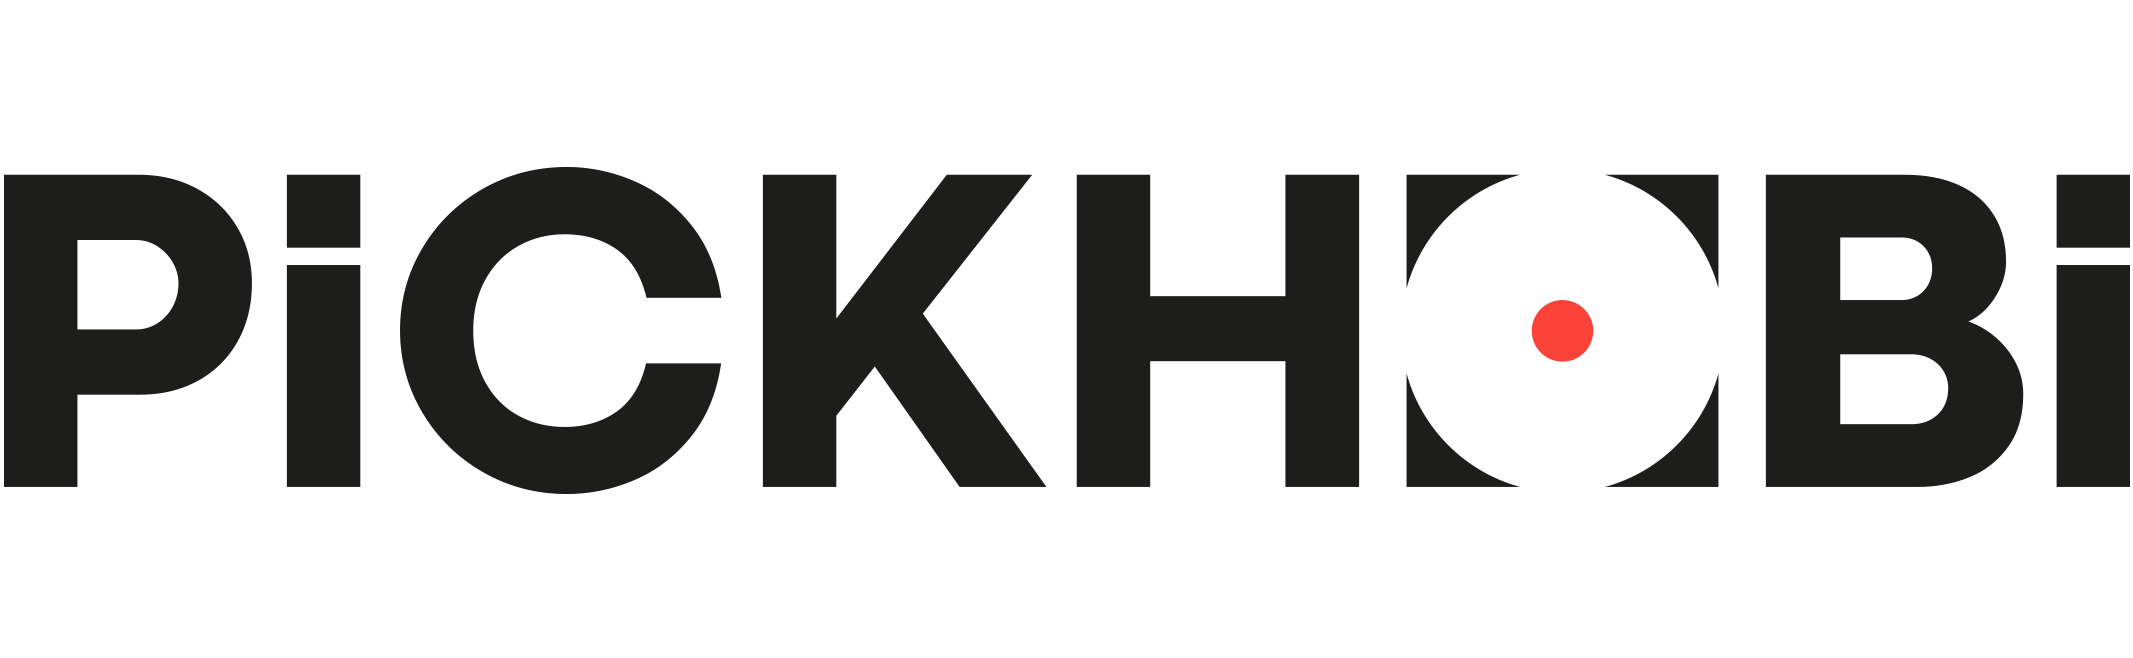 pickhobi-logo